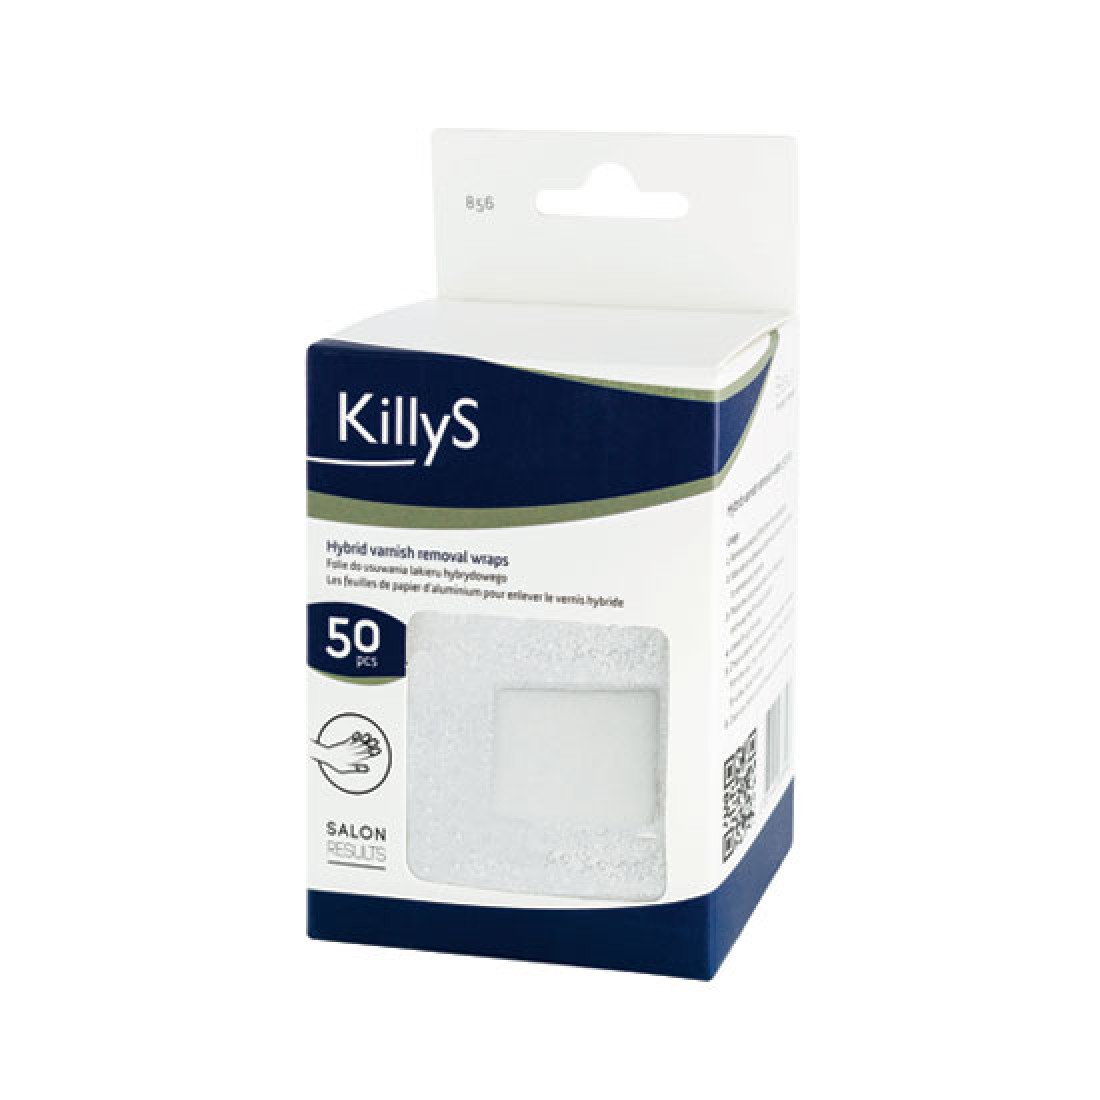 Killys Semi-permanent varnish removal foils 50pcs - 63963856 